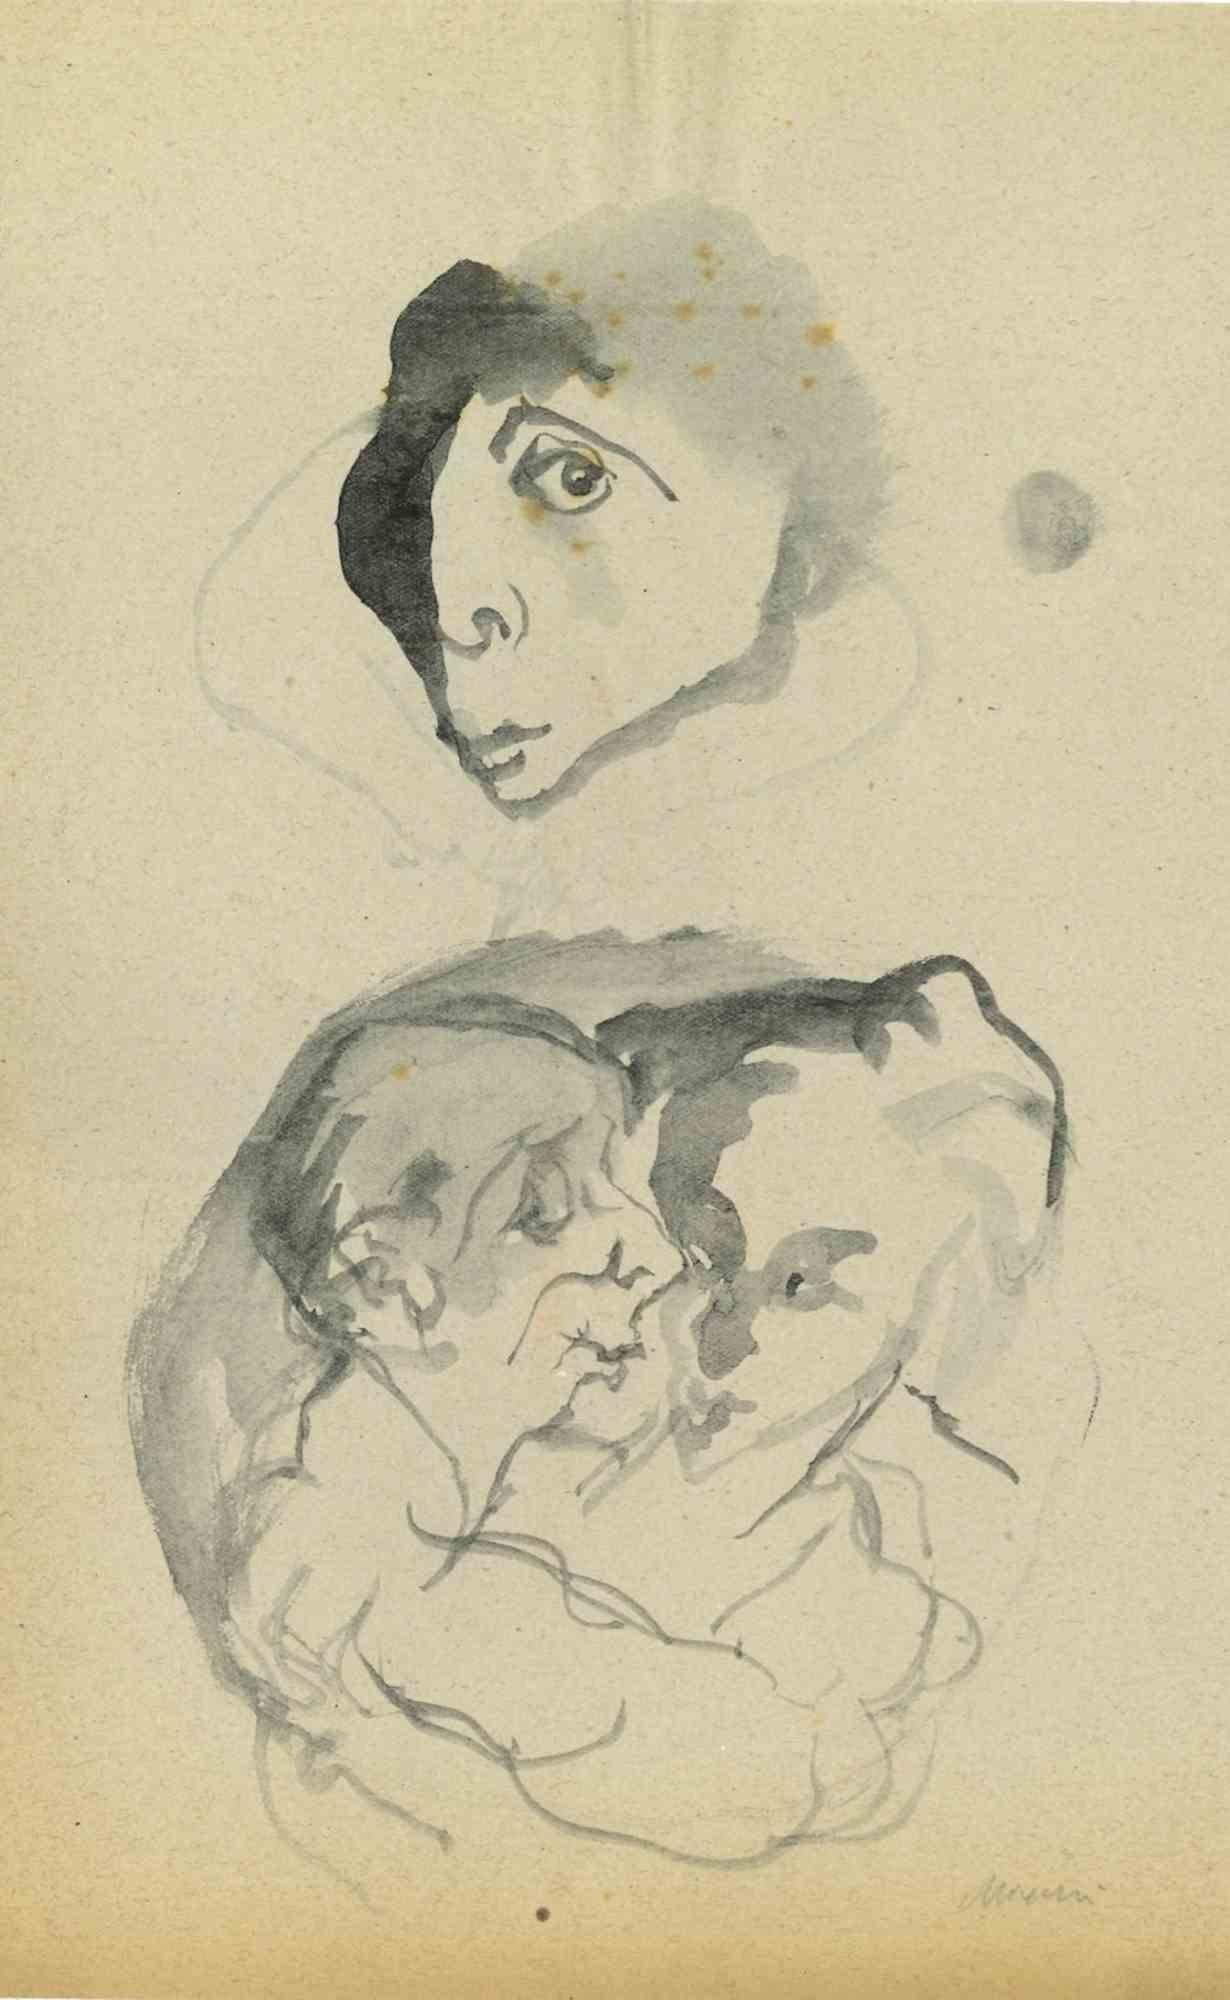 Portraits ist eine Aquarellzeichnung von Mino Maccari (1924-1989) aus der Mitte des 20. Jahrhunderts.

Handsigniert.

Guter Zustand mit leichten Stockflecken.

Mino Maccari (Siena, 1924-Rom, 16. Juni 1989) war ein italienischer Schriftsteller,